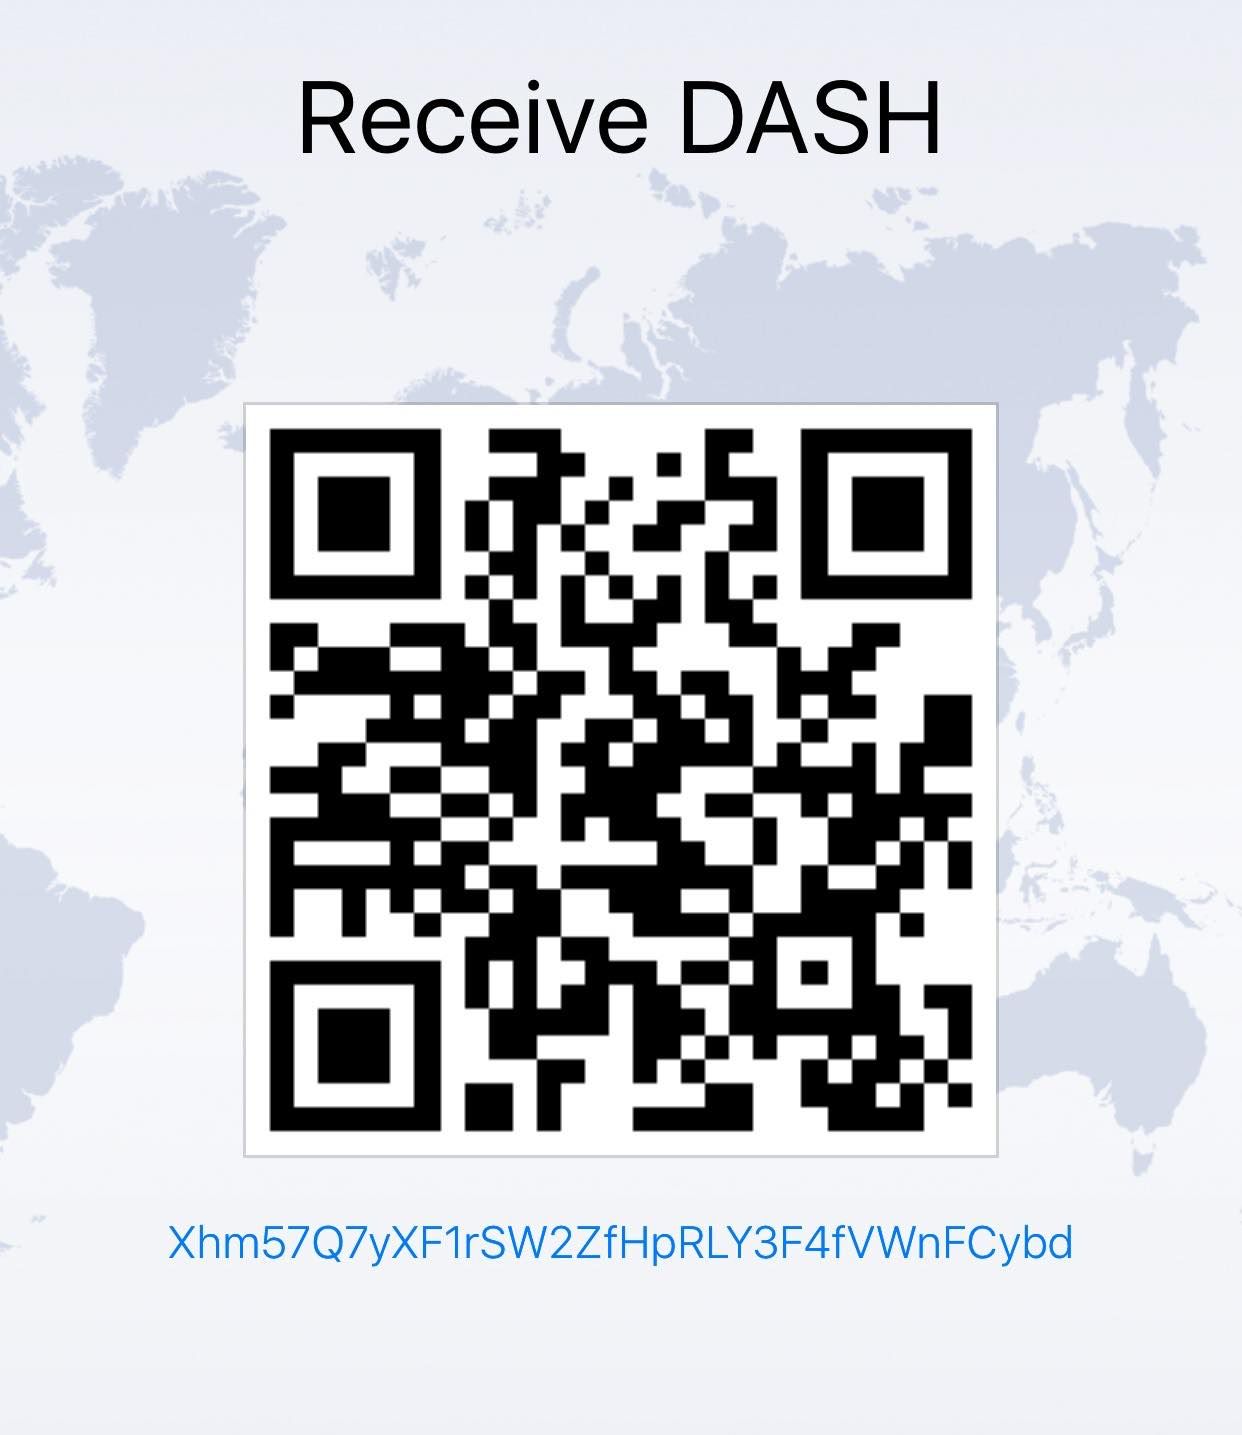 Dash-wallet.jpg